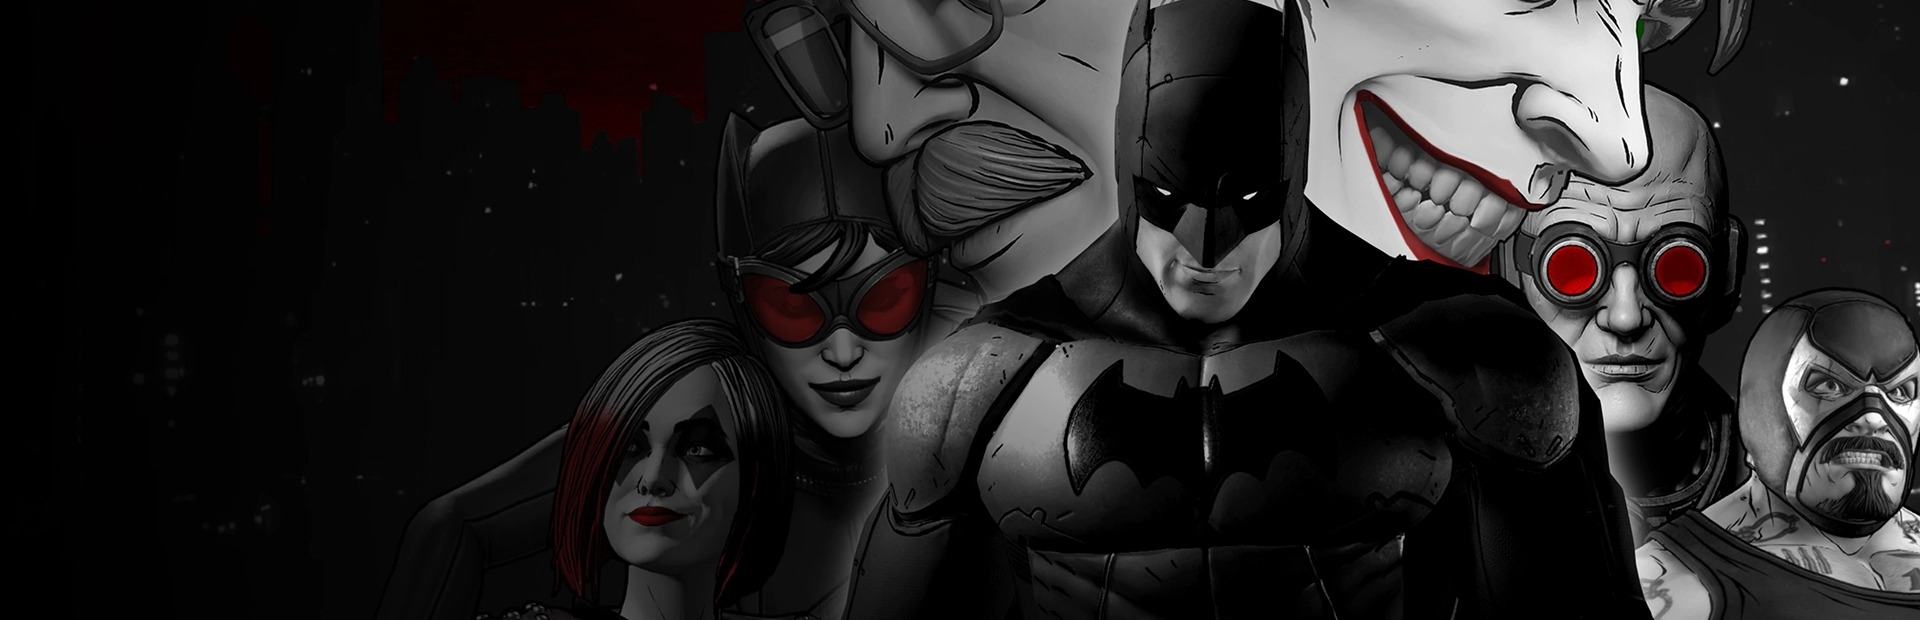 Telltale Batman Shadows Edition